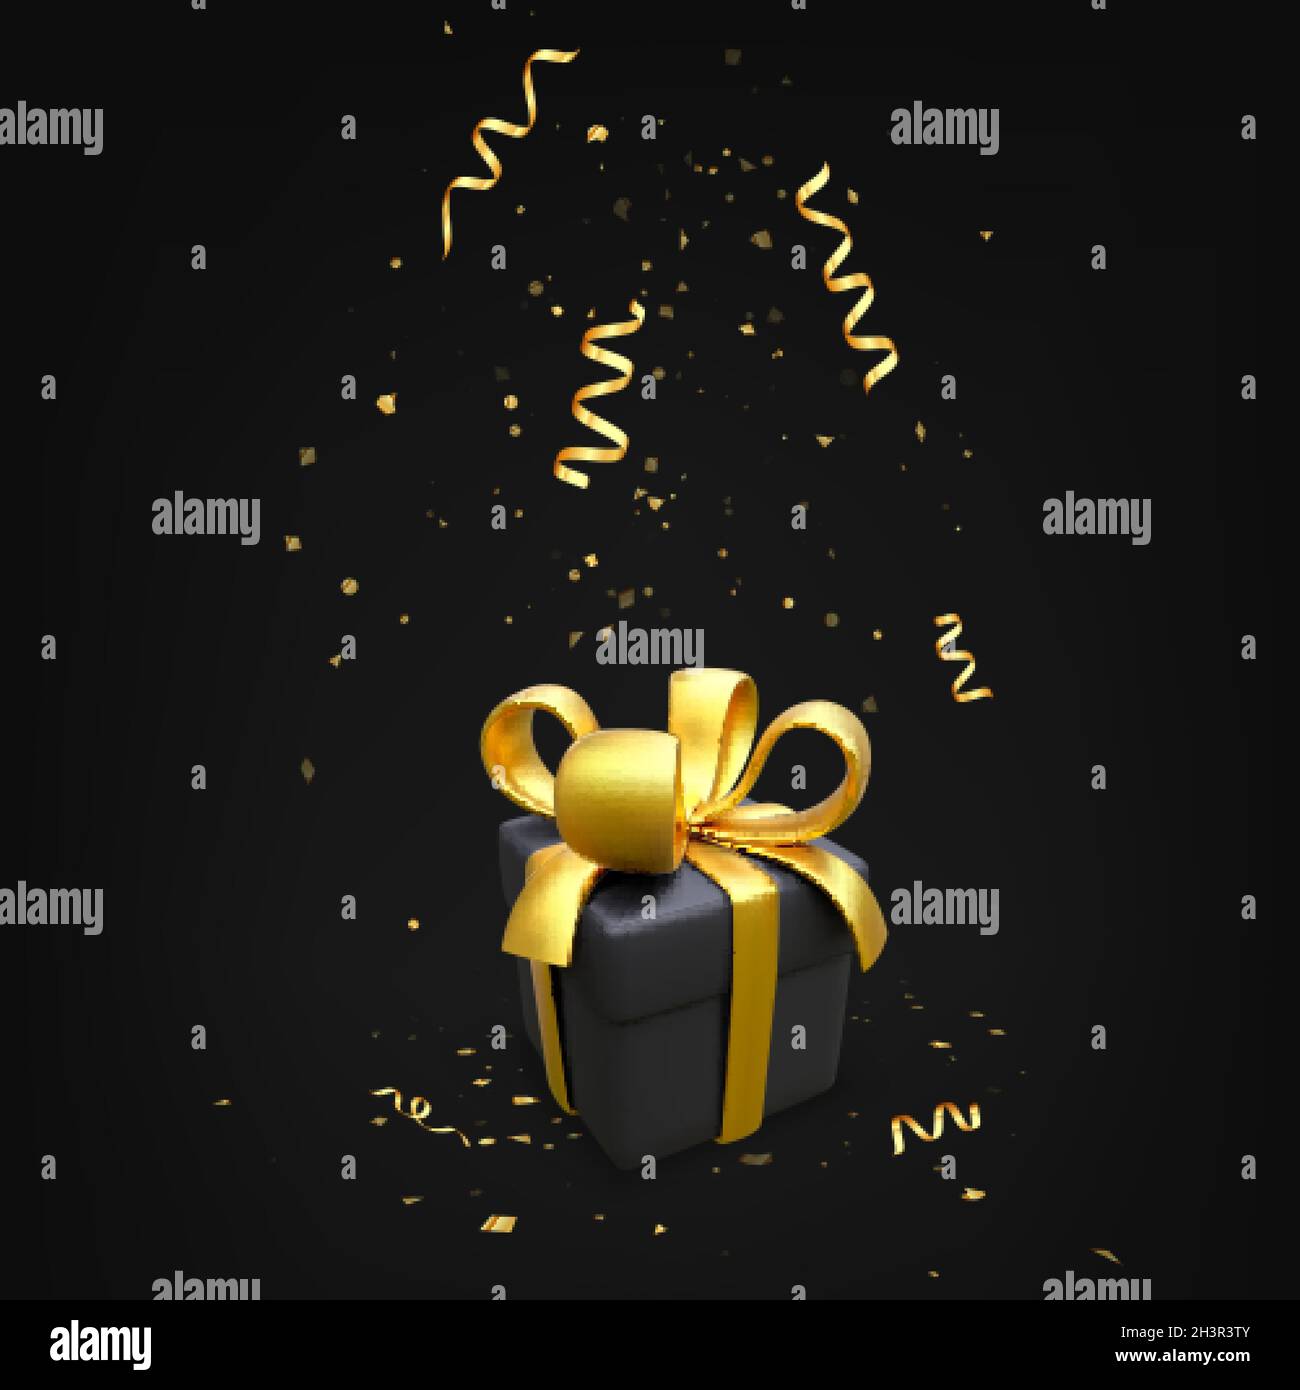 Schwarze Geschenkbox mit Goldband in realistischem Stil. Überraschungspaket mit Konfetti für Urlaubsbanner. 3D-Box mit goldener Schleife. Black friday Design Ele Stock Vektor